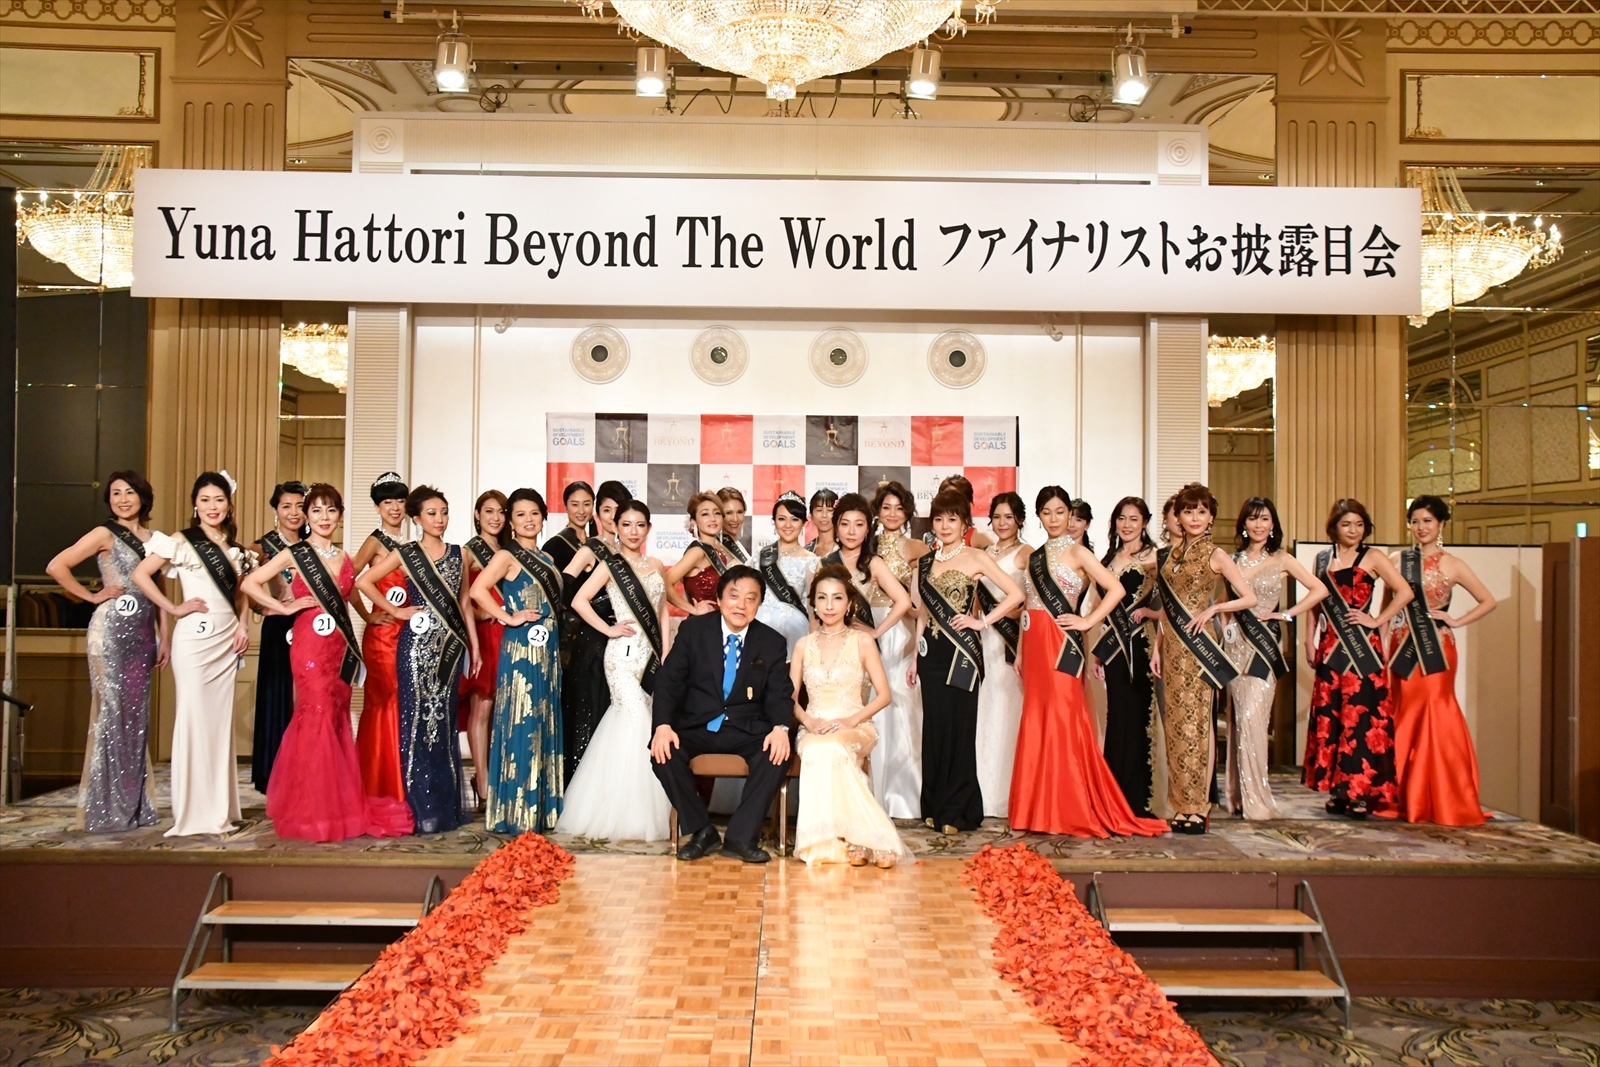 世界に通用するNoble Queenを決めるミセスコンテスト　
「Yuna Hattori Beyond The World」
キックオフパーティ事後報告のお知らせ